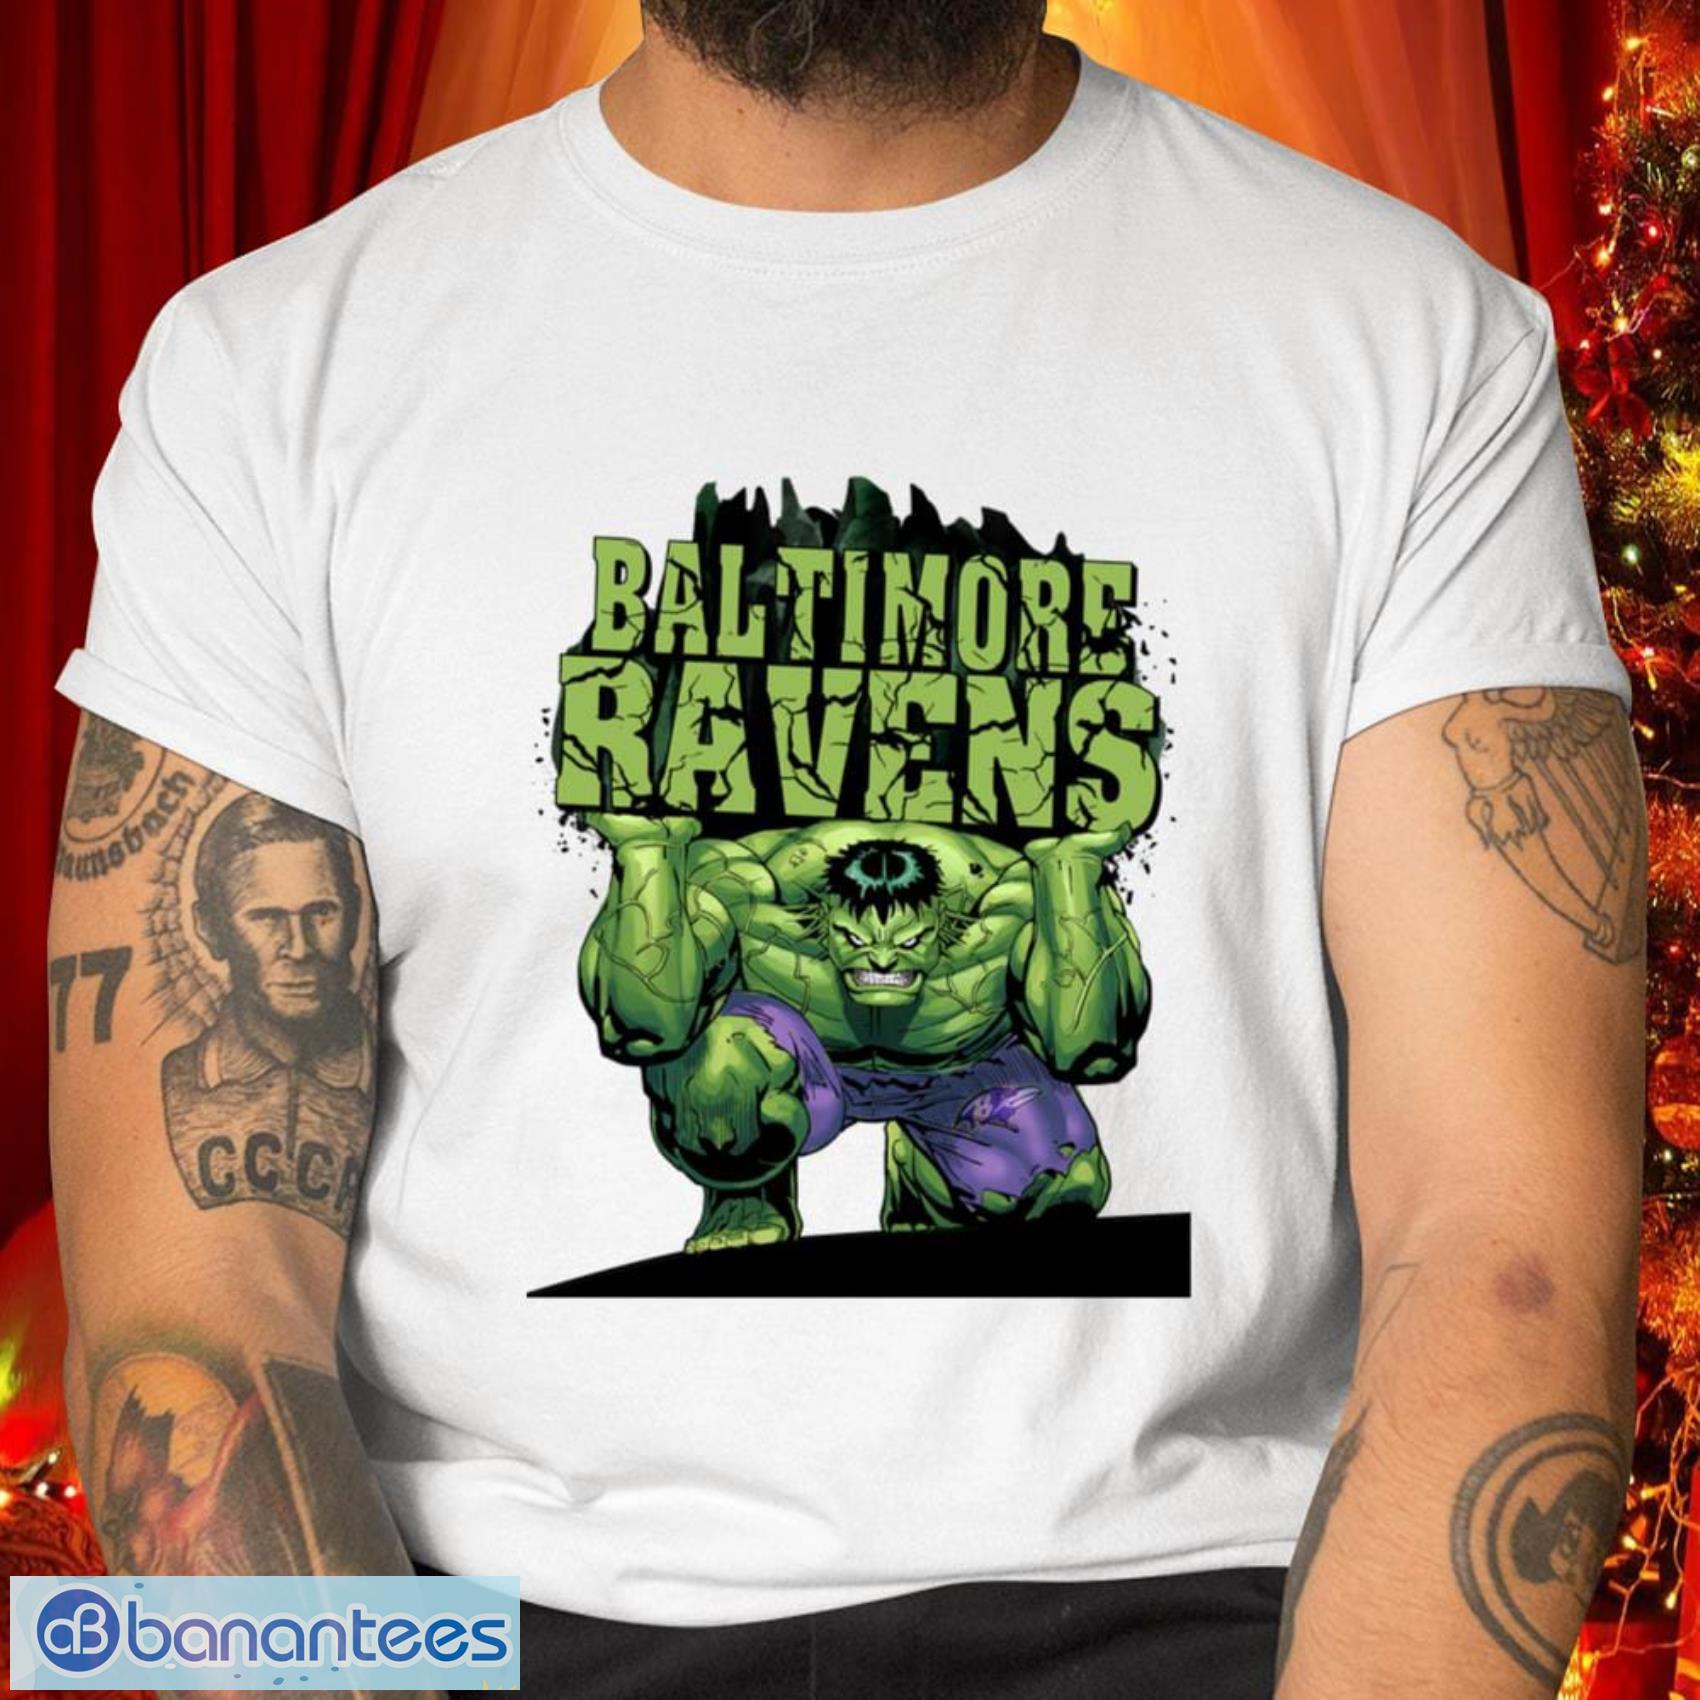 Baltimore Ravens NFL Football Gift Fr Fans Incredible Hulk Marvel Avengers Sports T Shirt - Baltimore Ravens NFL Football Incredible Hulk Marvel Avengers Sports T Shirt_1